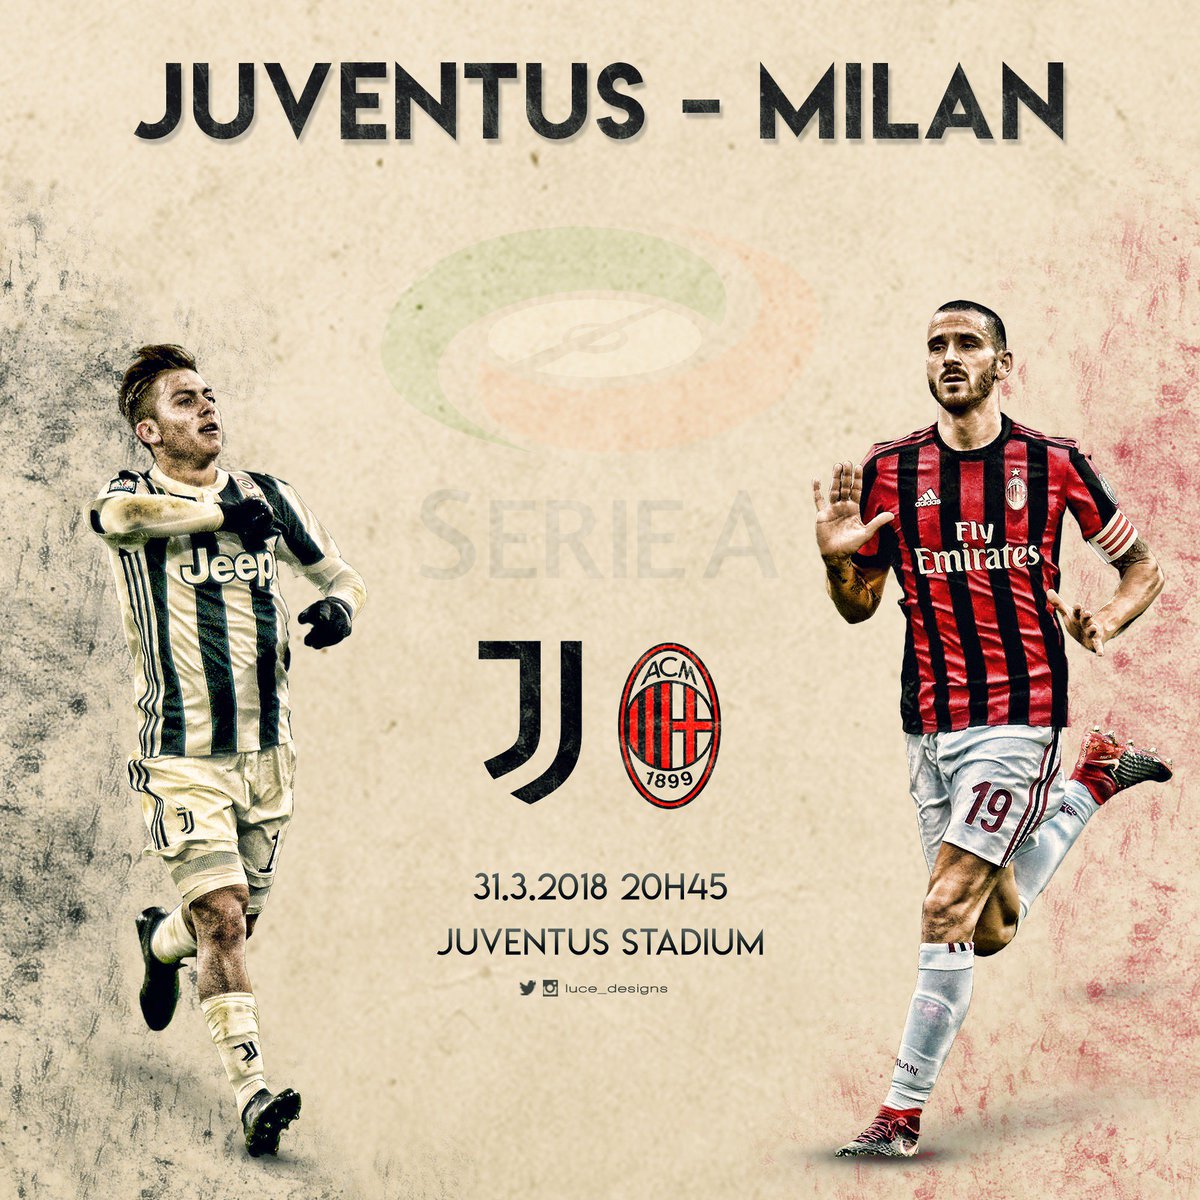 Juventus vs milan